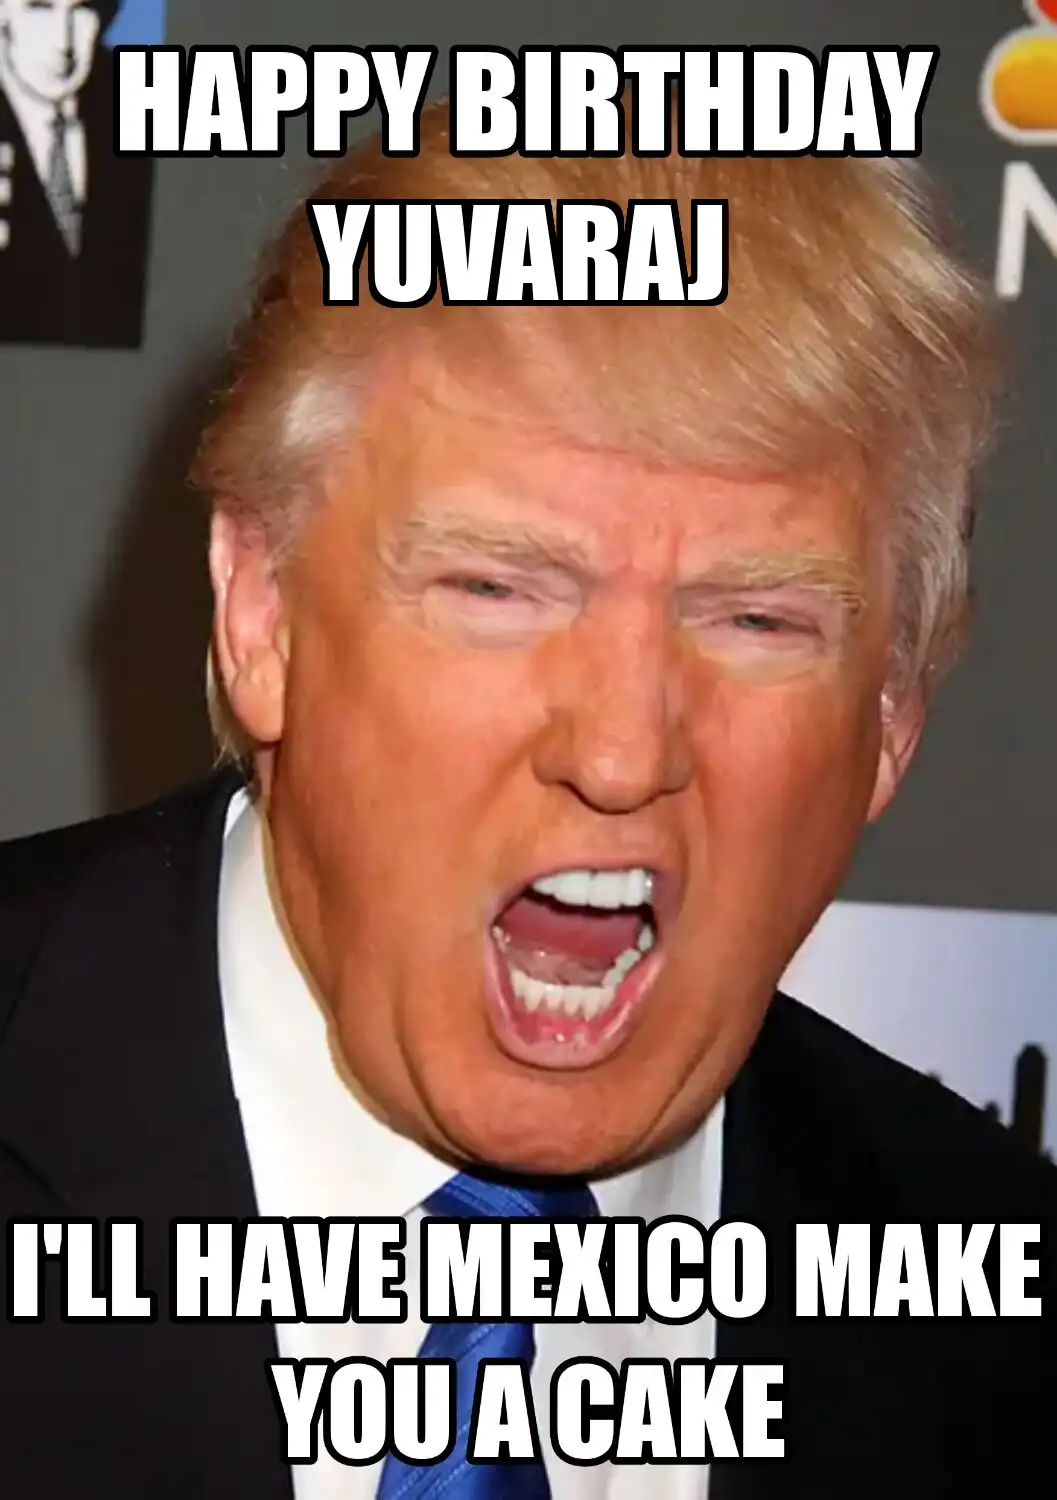 Happy Birthday Yuvaraj Mexico Make You A Cake Meme